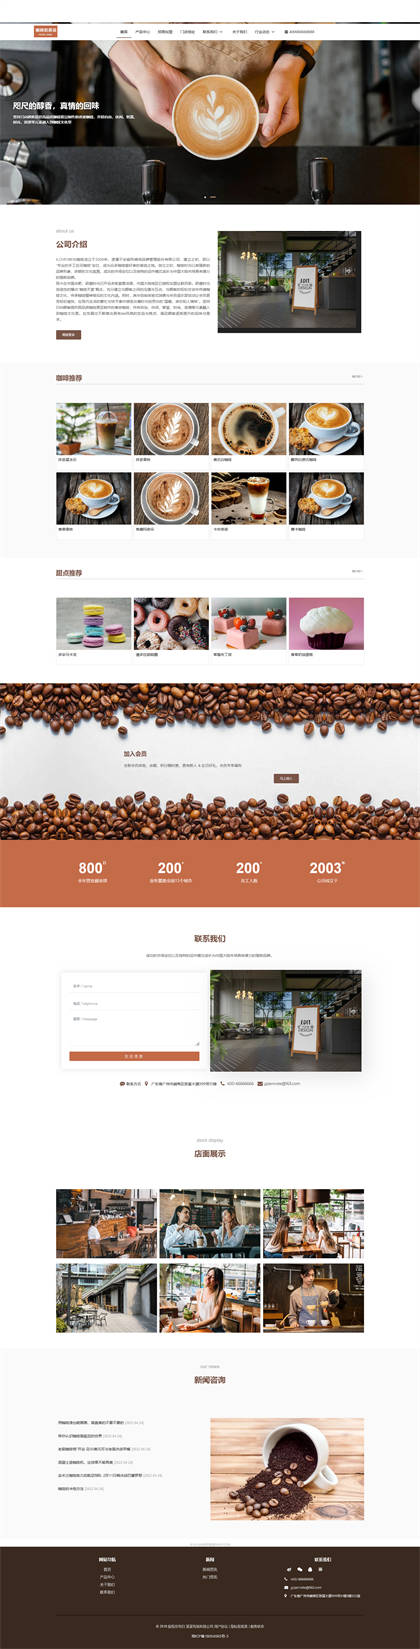 咖啡店-咖啡屋-奶茶店-休闲吧-咖啡厂网站模板网站模板图片